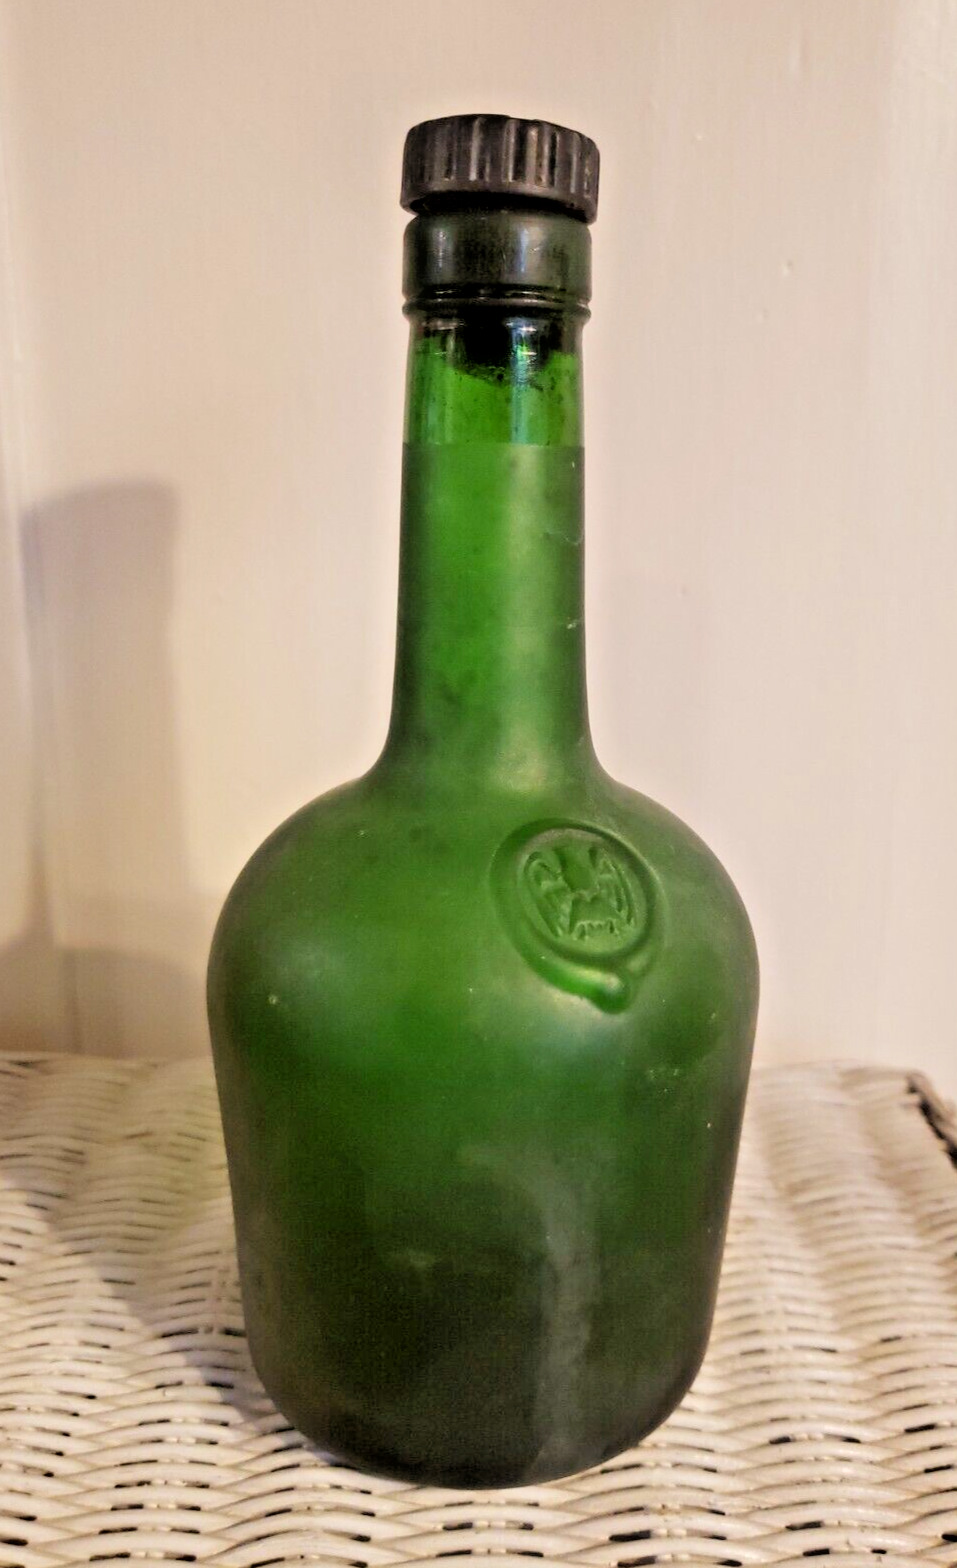 Extra Vieille Courvoisier Cognac Green Glass Bottle France .375 Empty Vintage